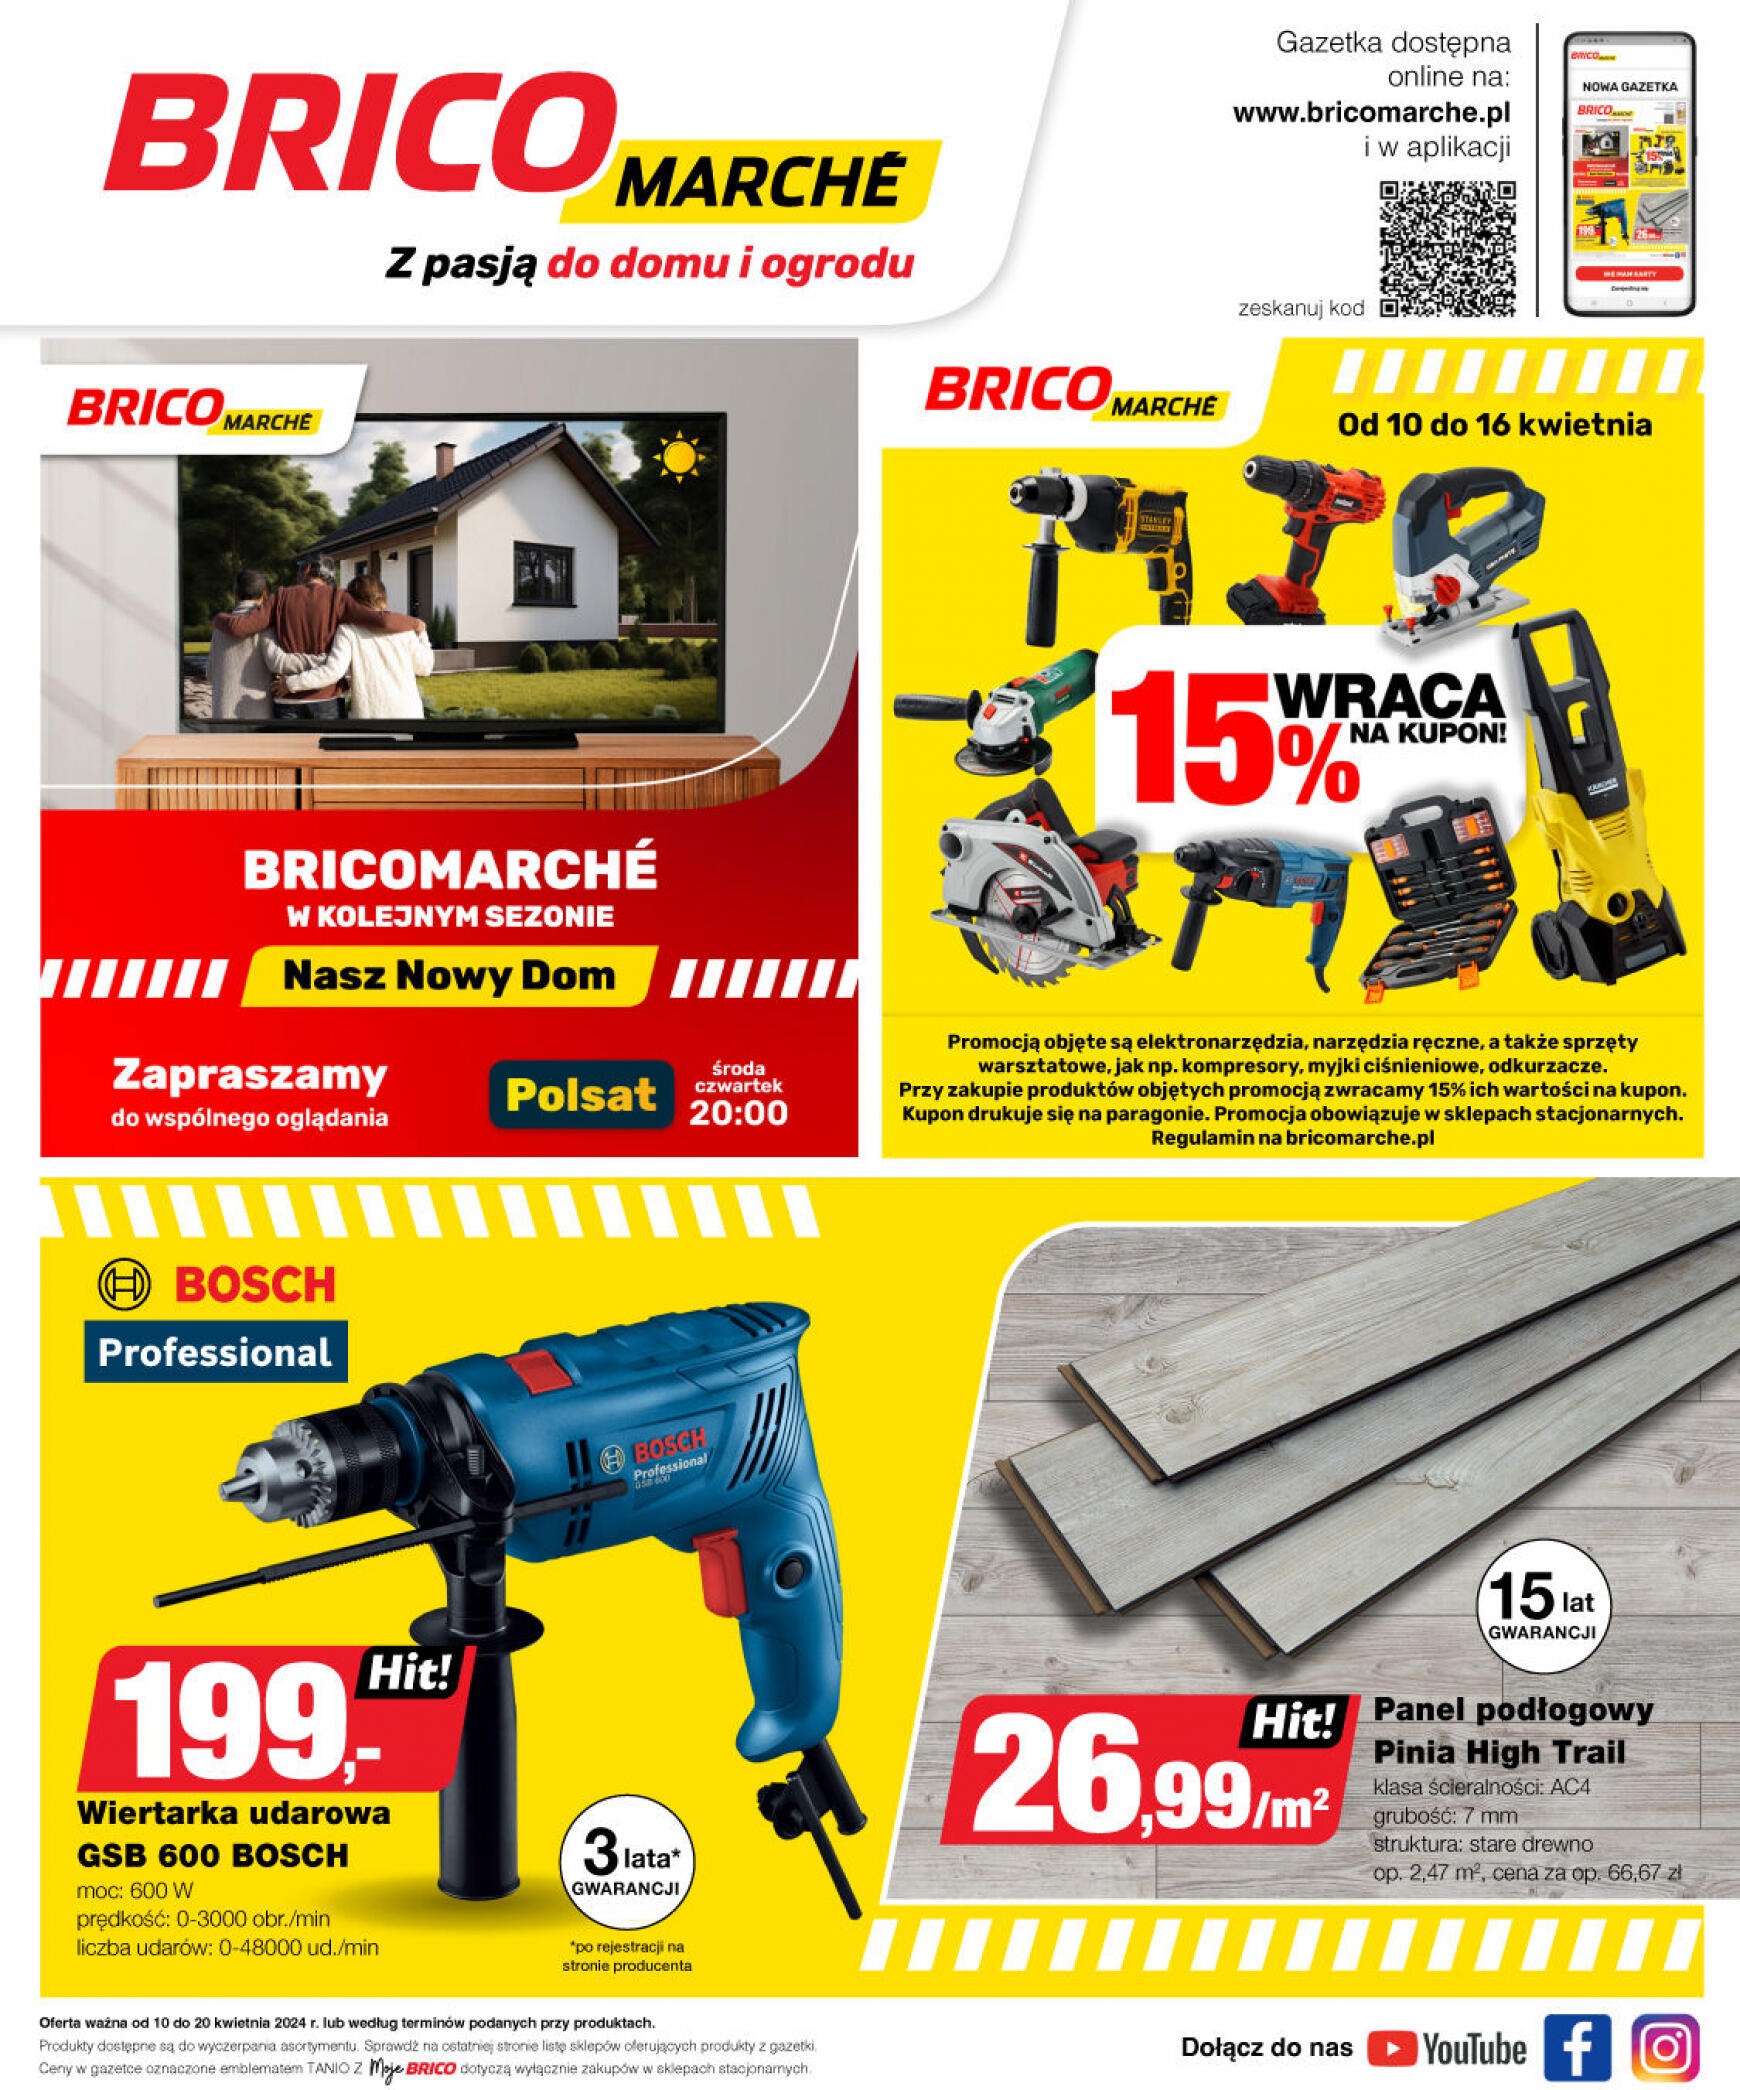 brico-marche - Bricomarché gazetka aktualna ważna od 10.04. - 20.04. - page: 15